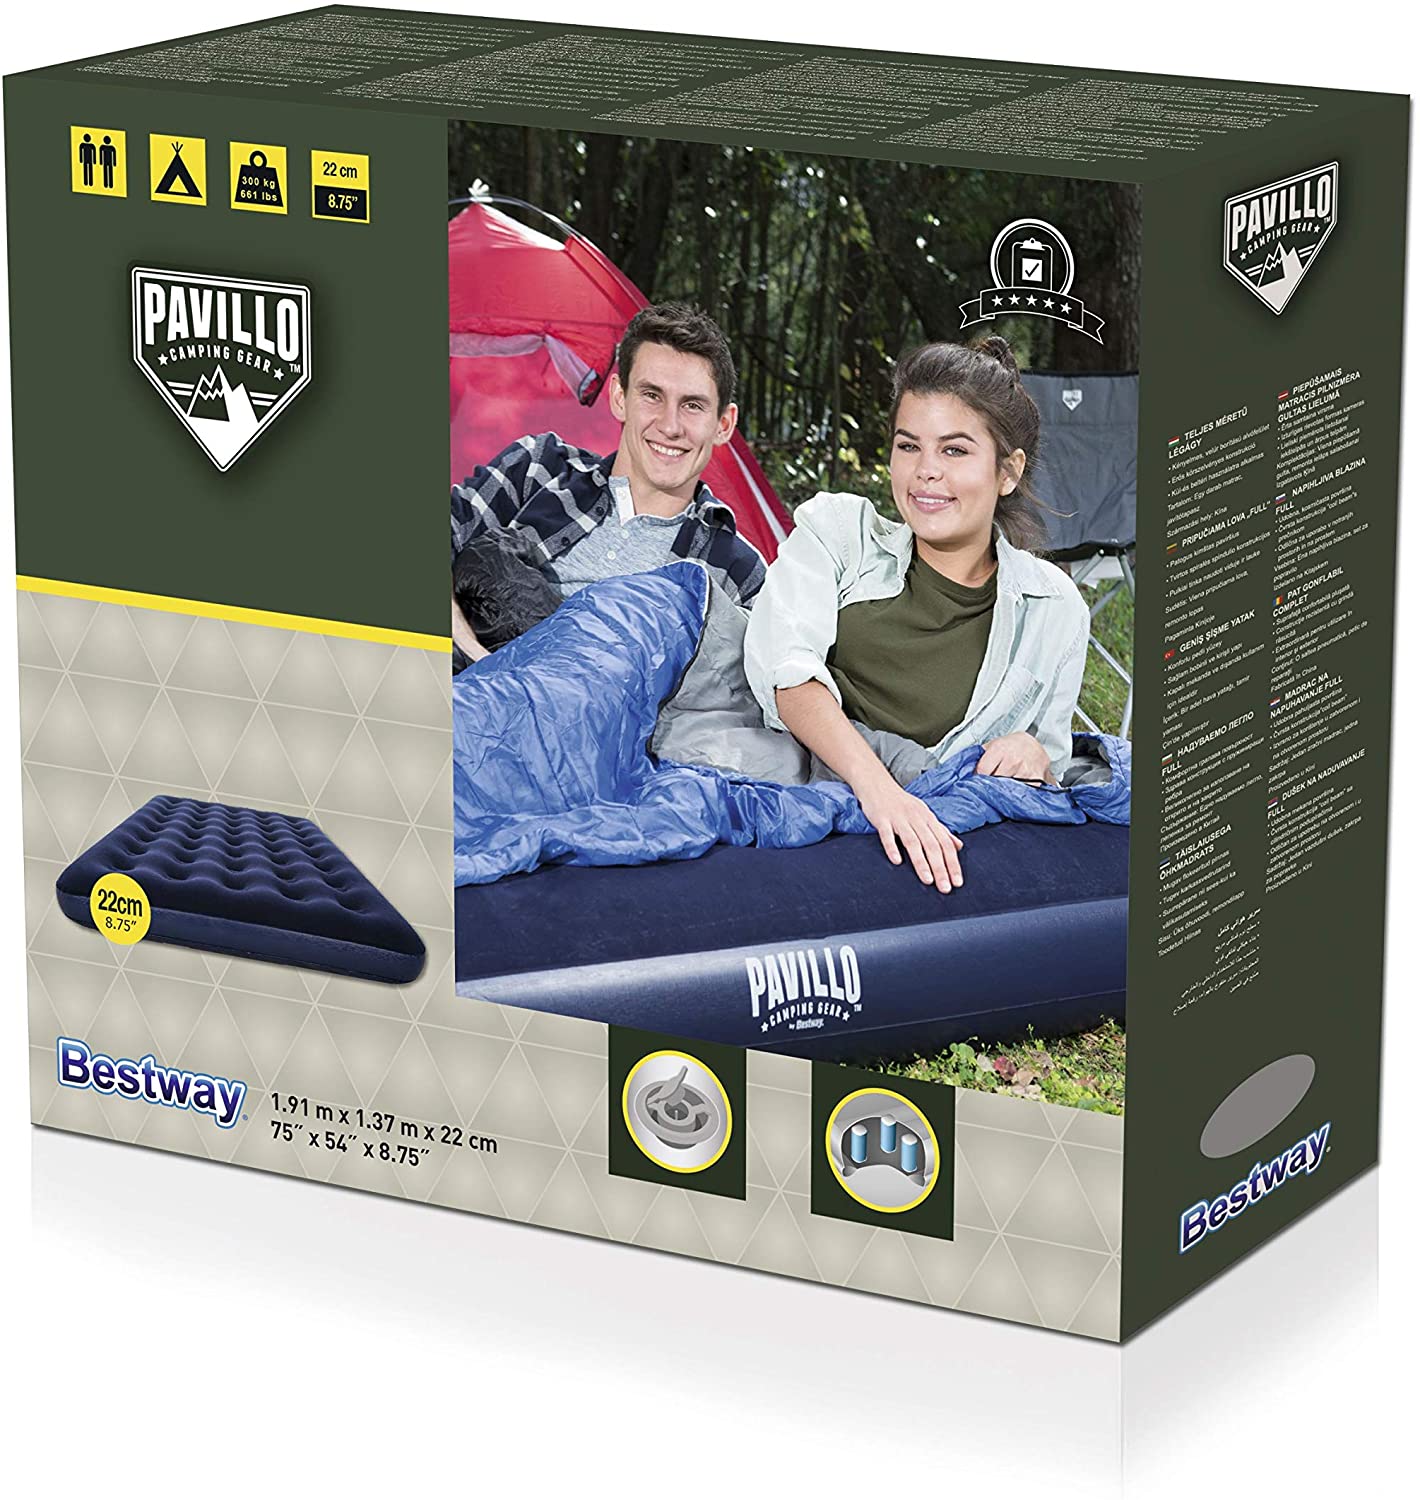 Materassino gonfiabile letto d'aria per campeggio viaggi matrimoniale  203x152x56cm 130W - Costway